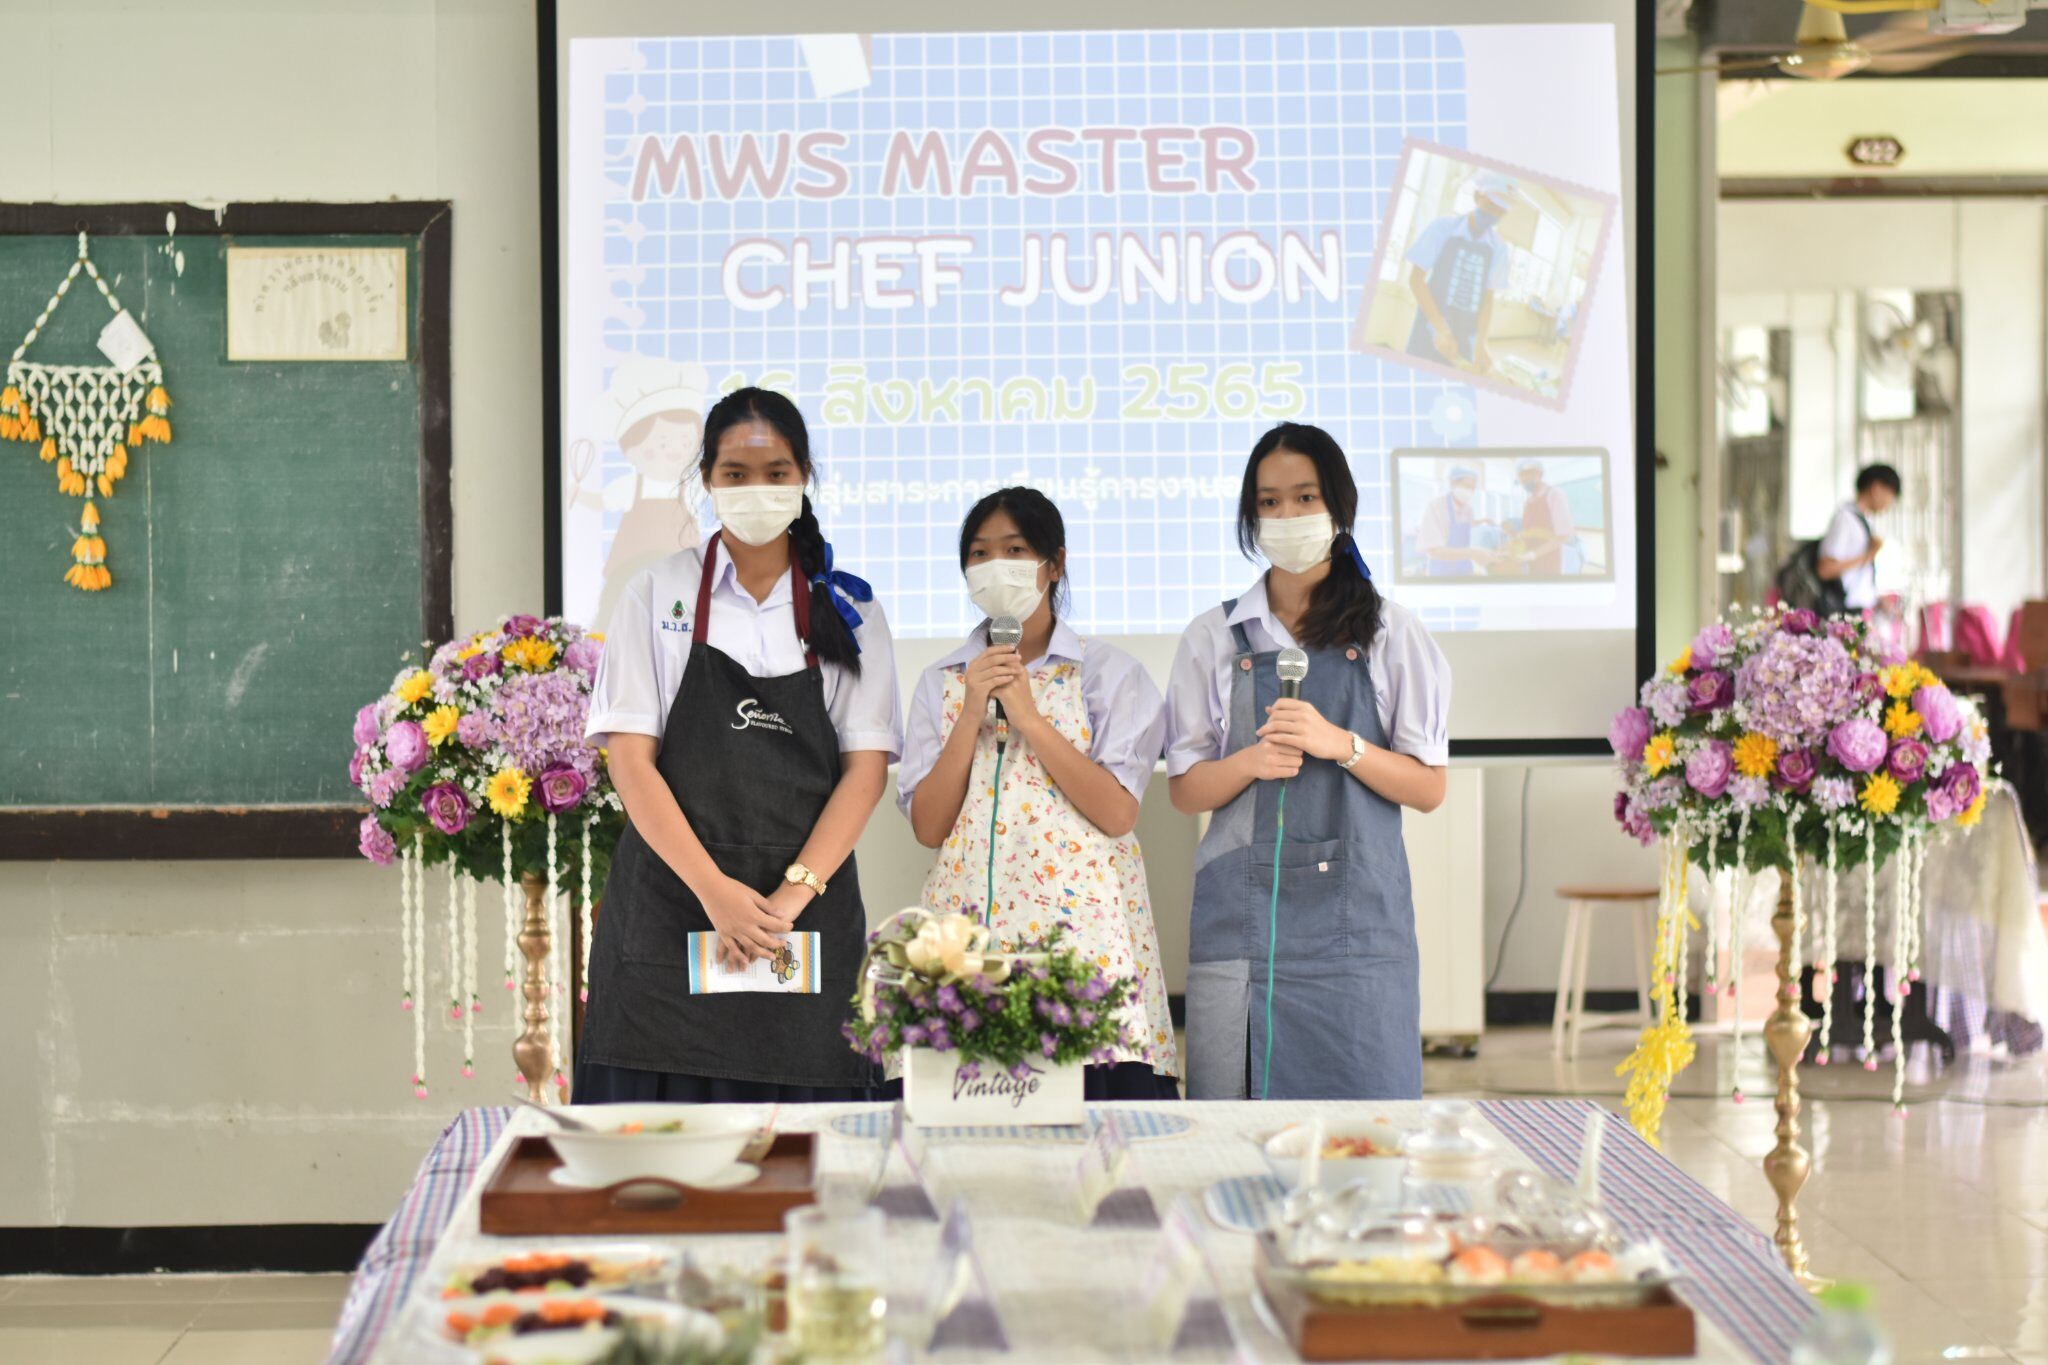 MWS Master Chef Junion